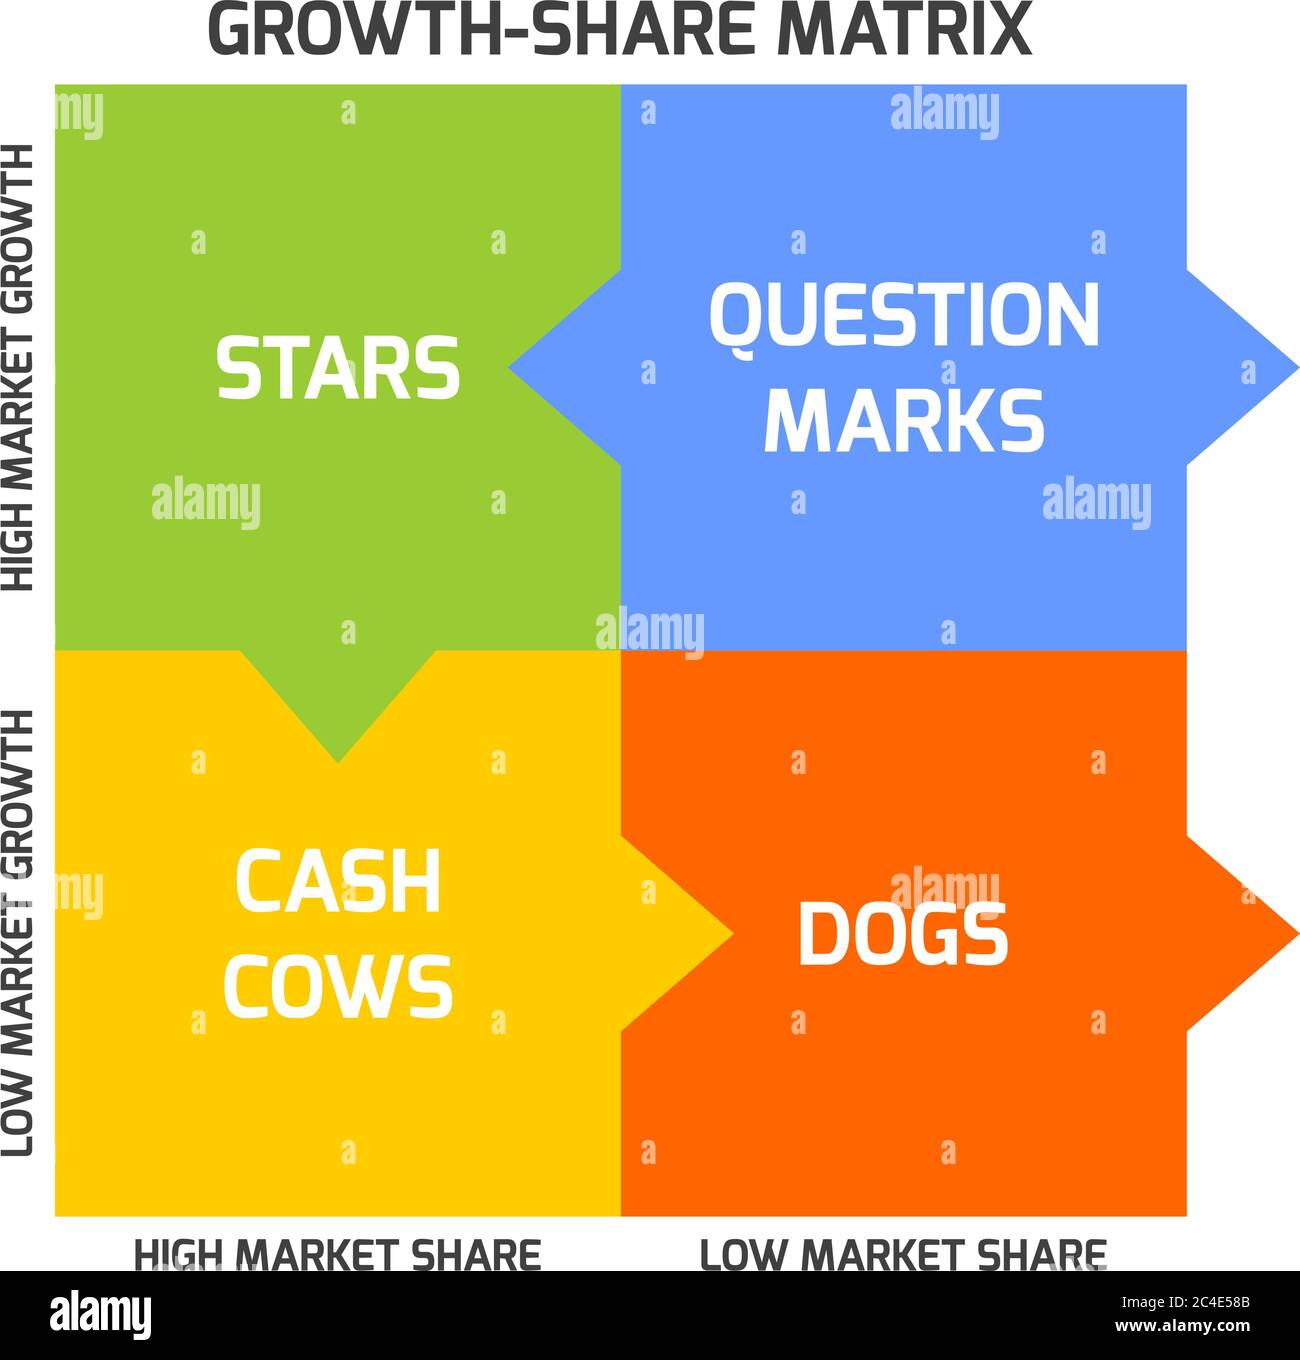 La matrice BCG, o matrice Boston, mira a identificare prospettive di crescita elevata categorizzando i prodotti in base al tasso di crescita e alla quota di mercato. Illustrazione Vettoriale